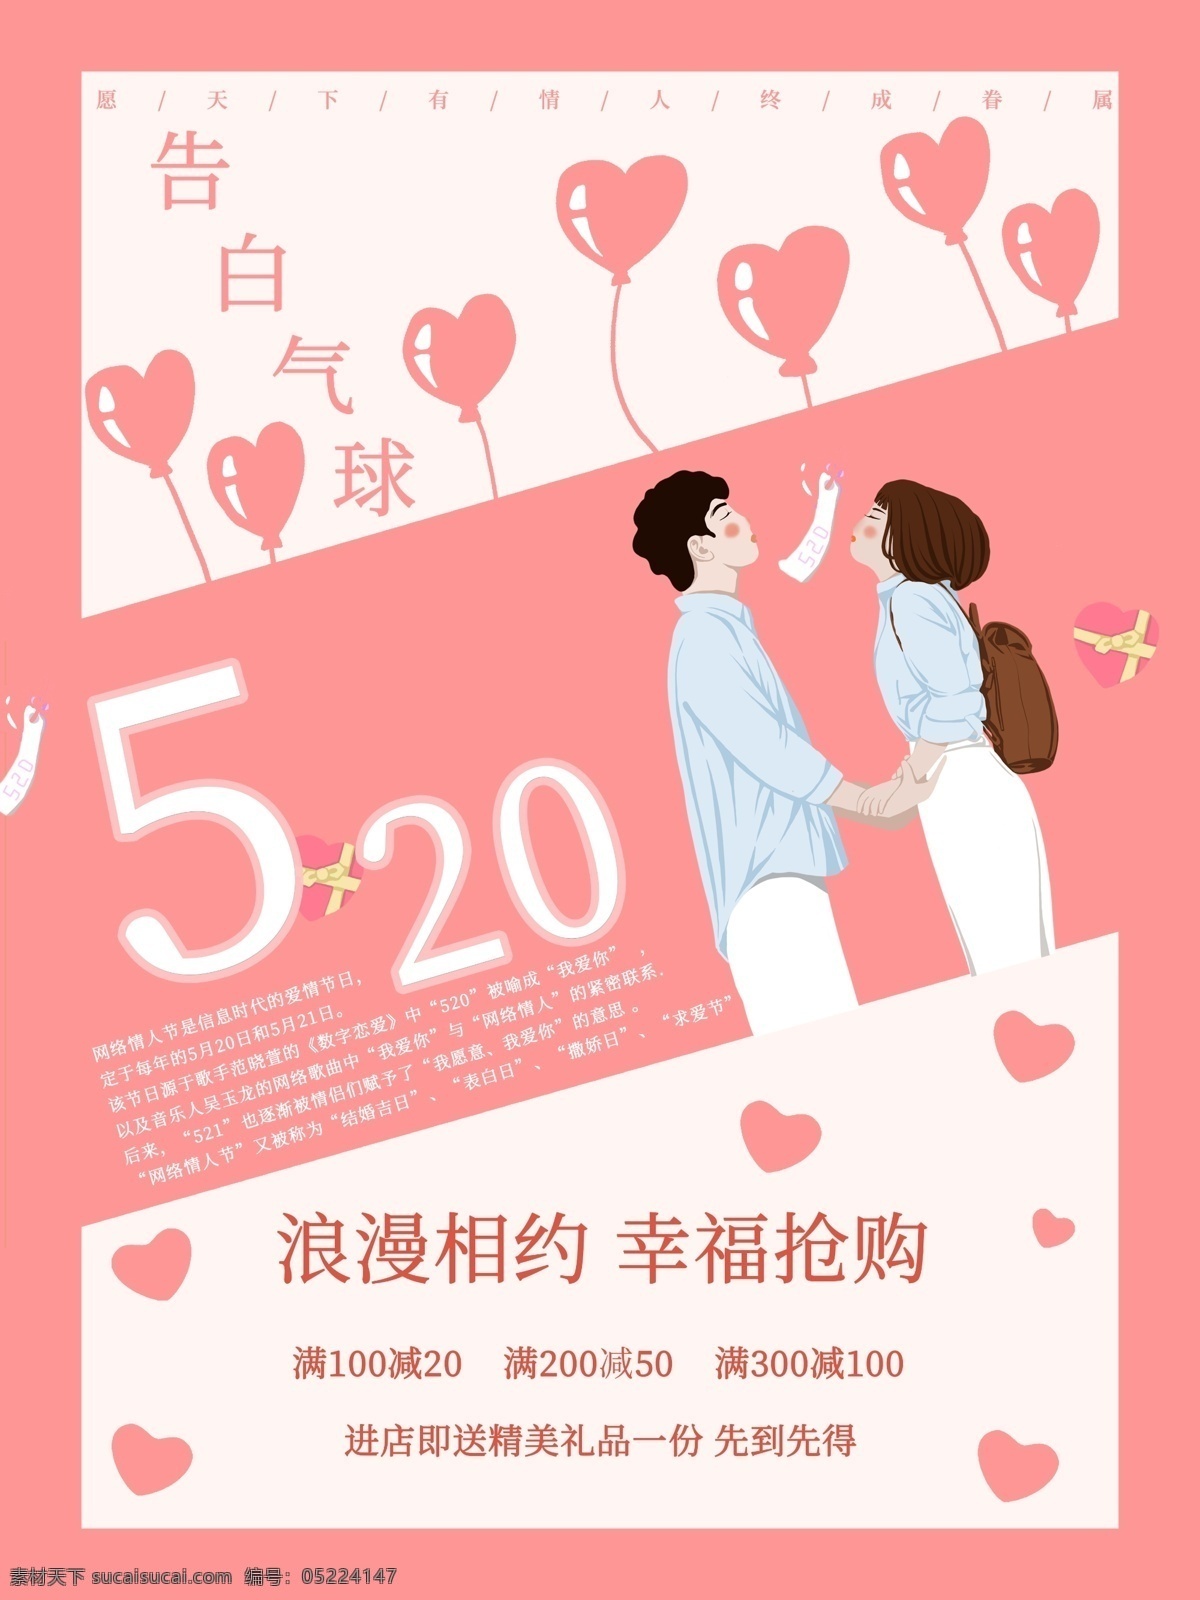 520 简约 宣传海报 宣传 节日 爱情 情侣 情人节海报 浪漫相约 520海报 告白气球